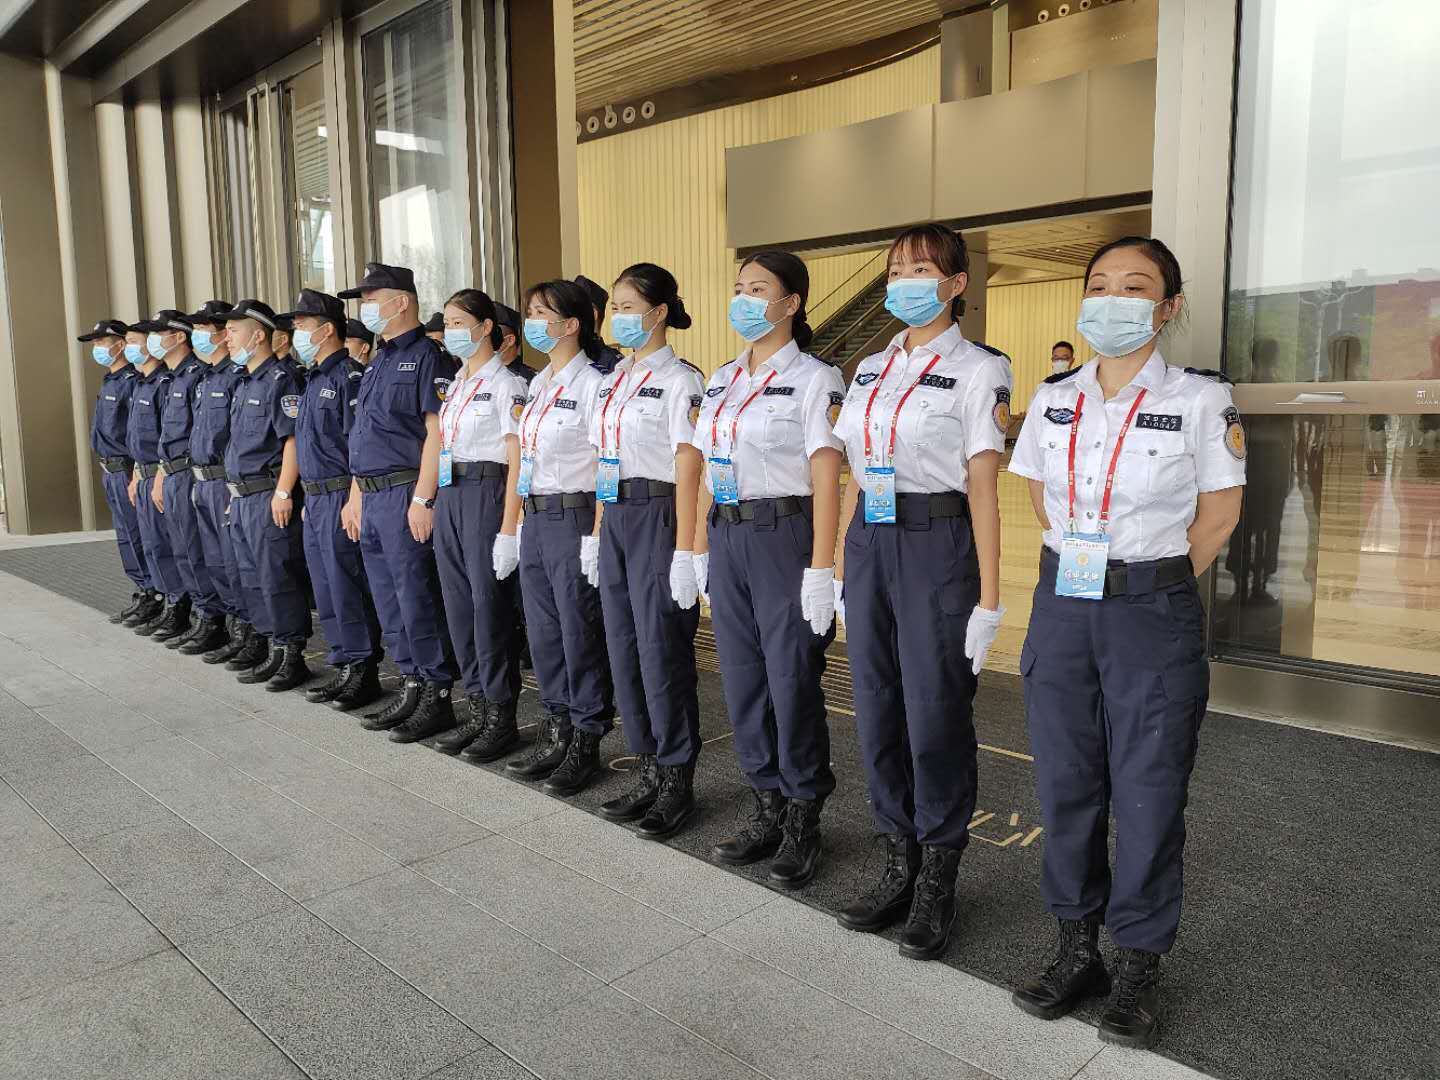 深圳巡防制服图片